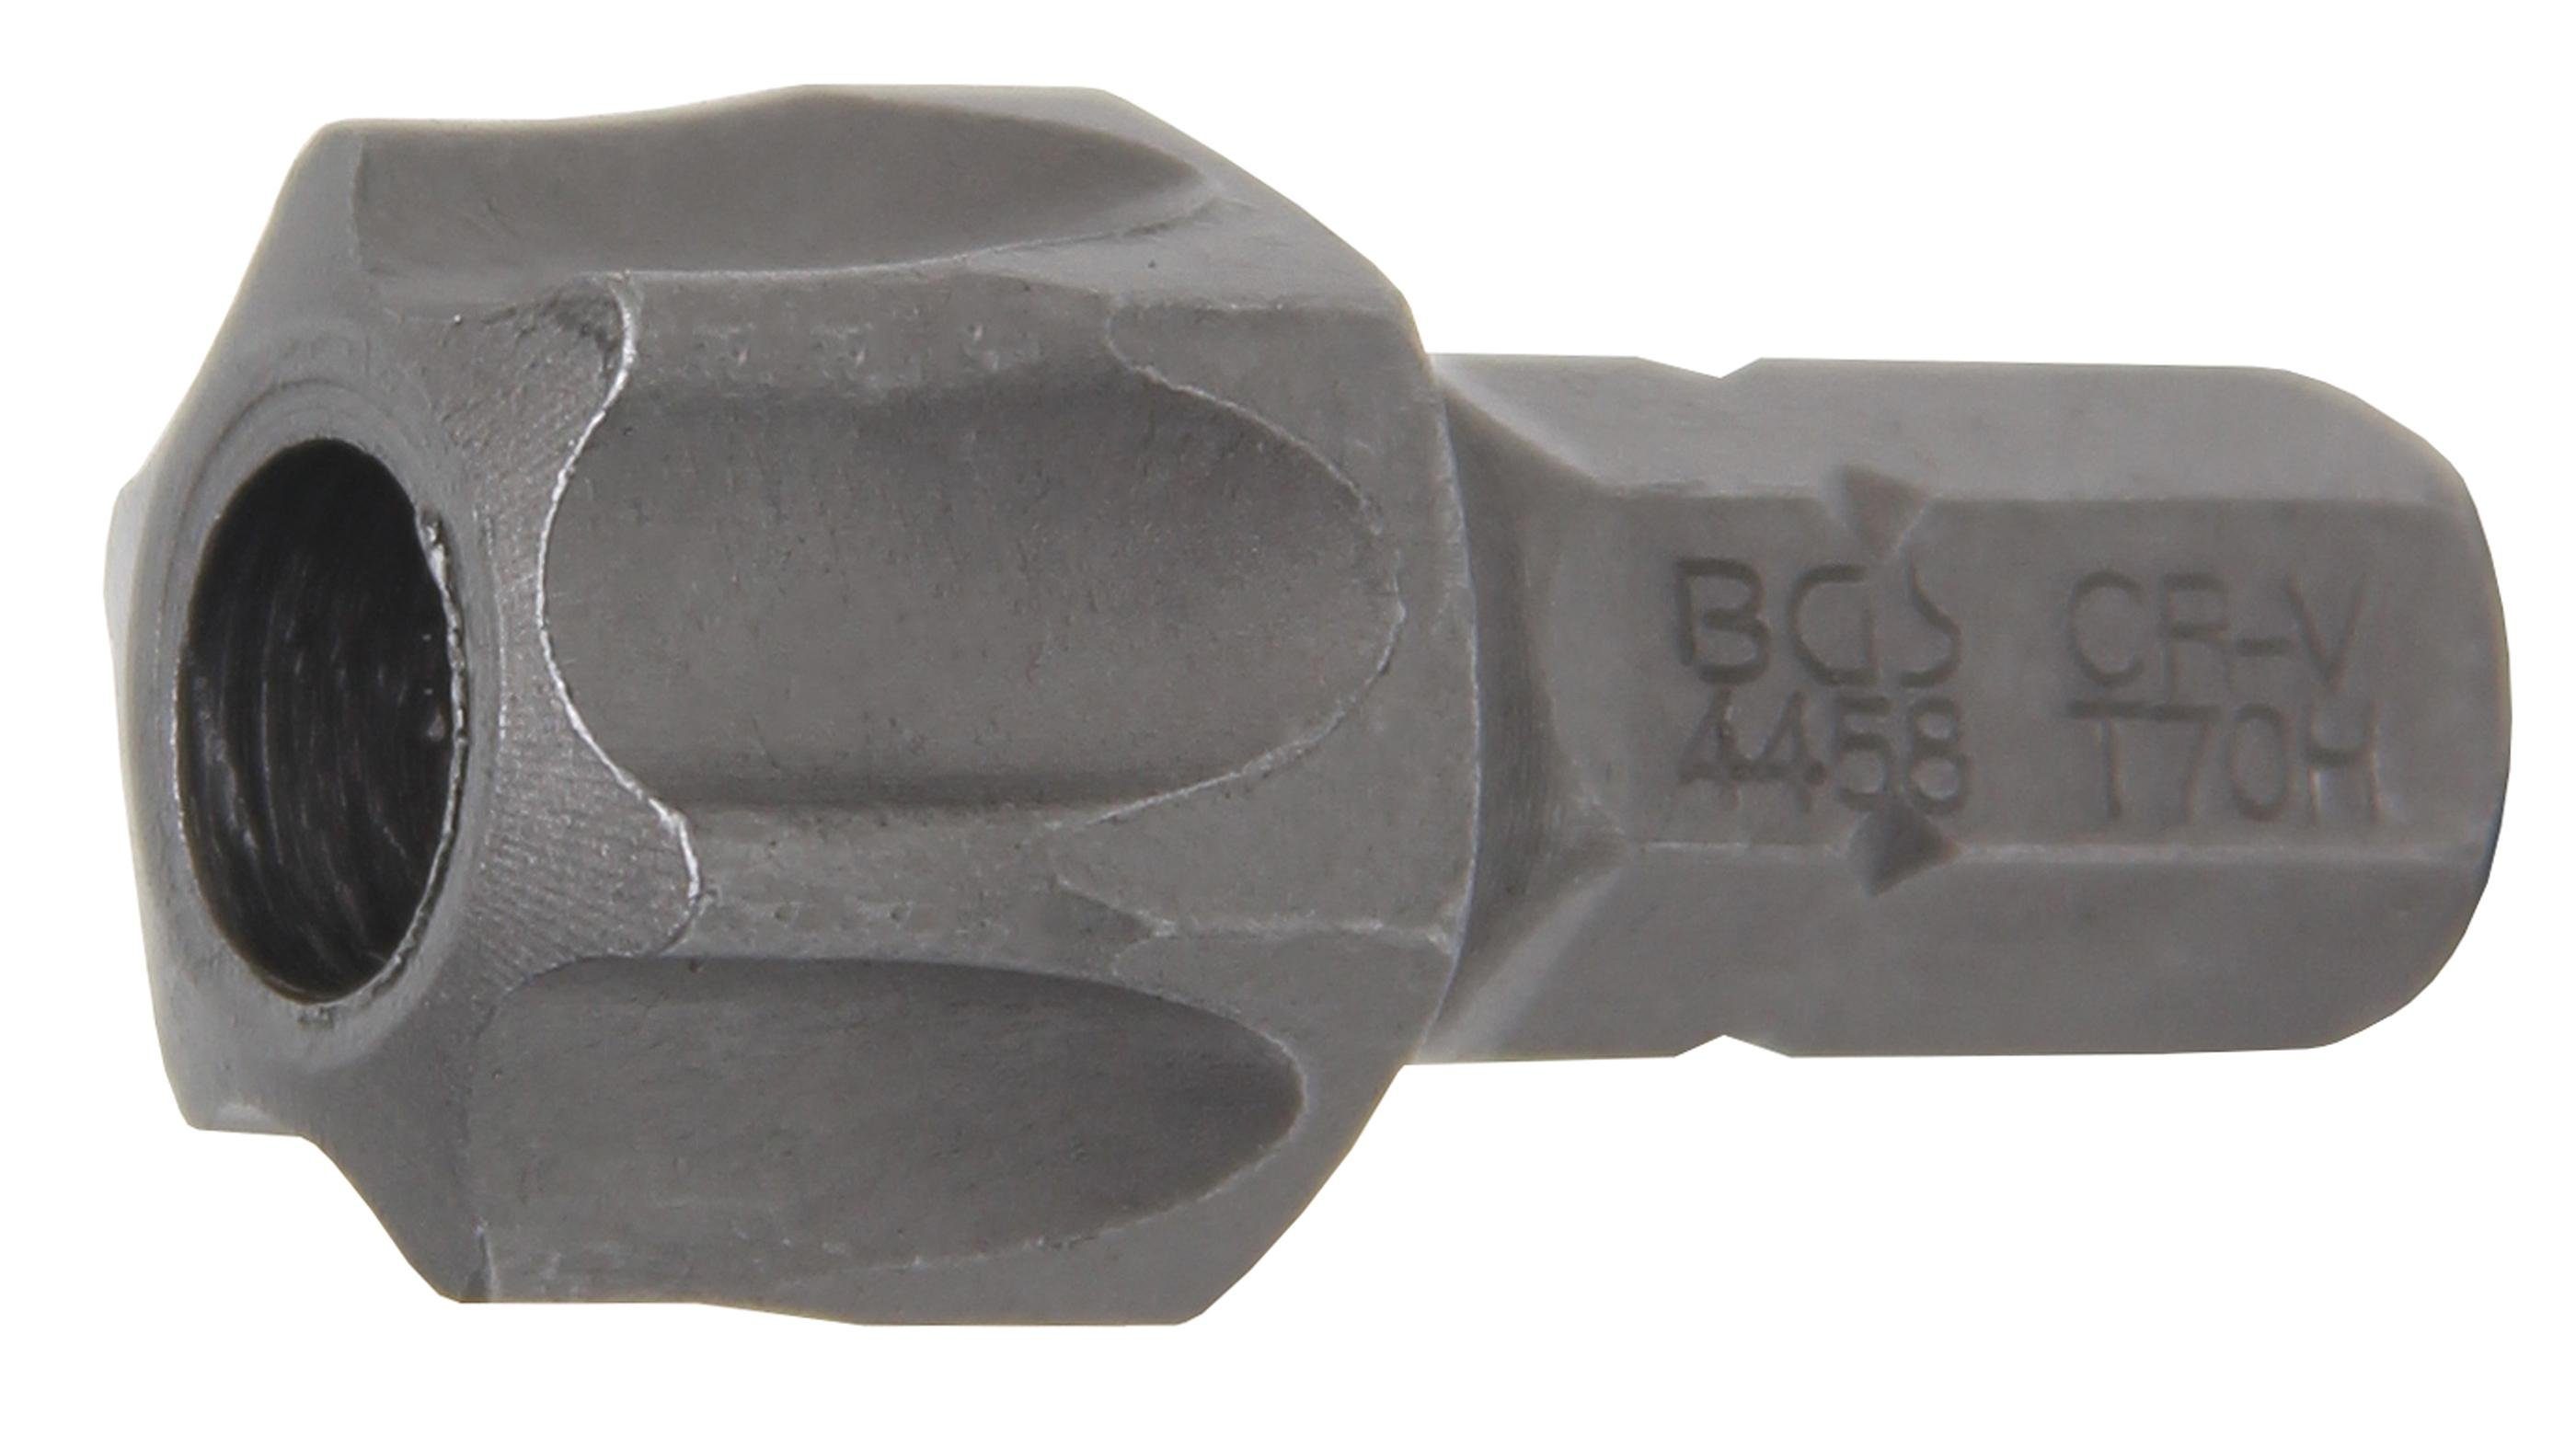 BGS technic Bit-Schraubendreher Bit, Antrieb Außensechskant 8 mm (5/16), T-Profil (für Torx) mit Bohrung T70